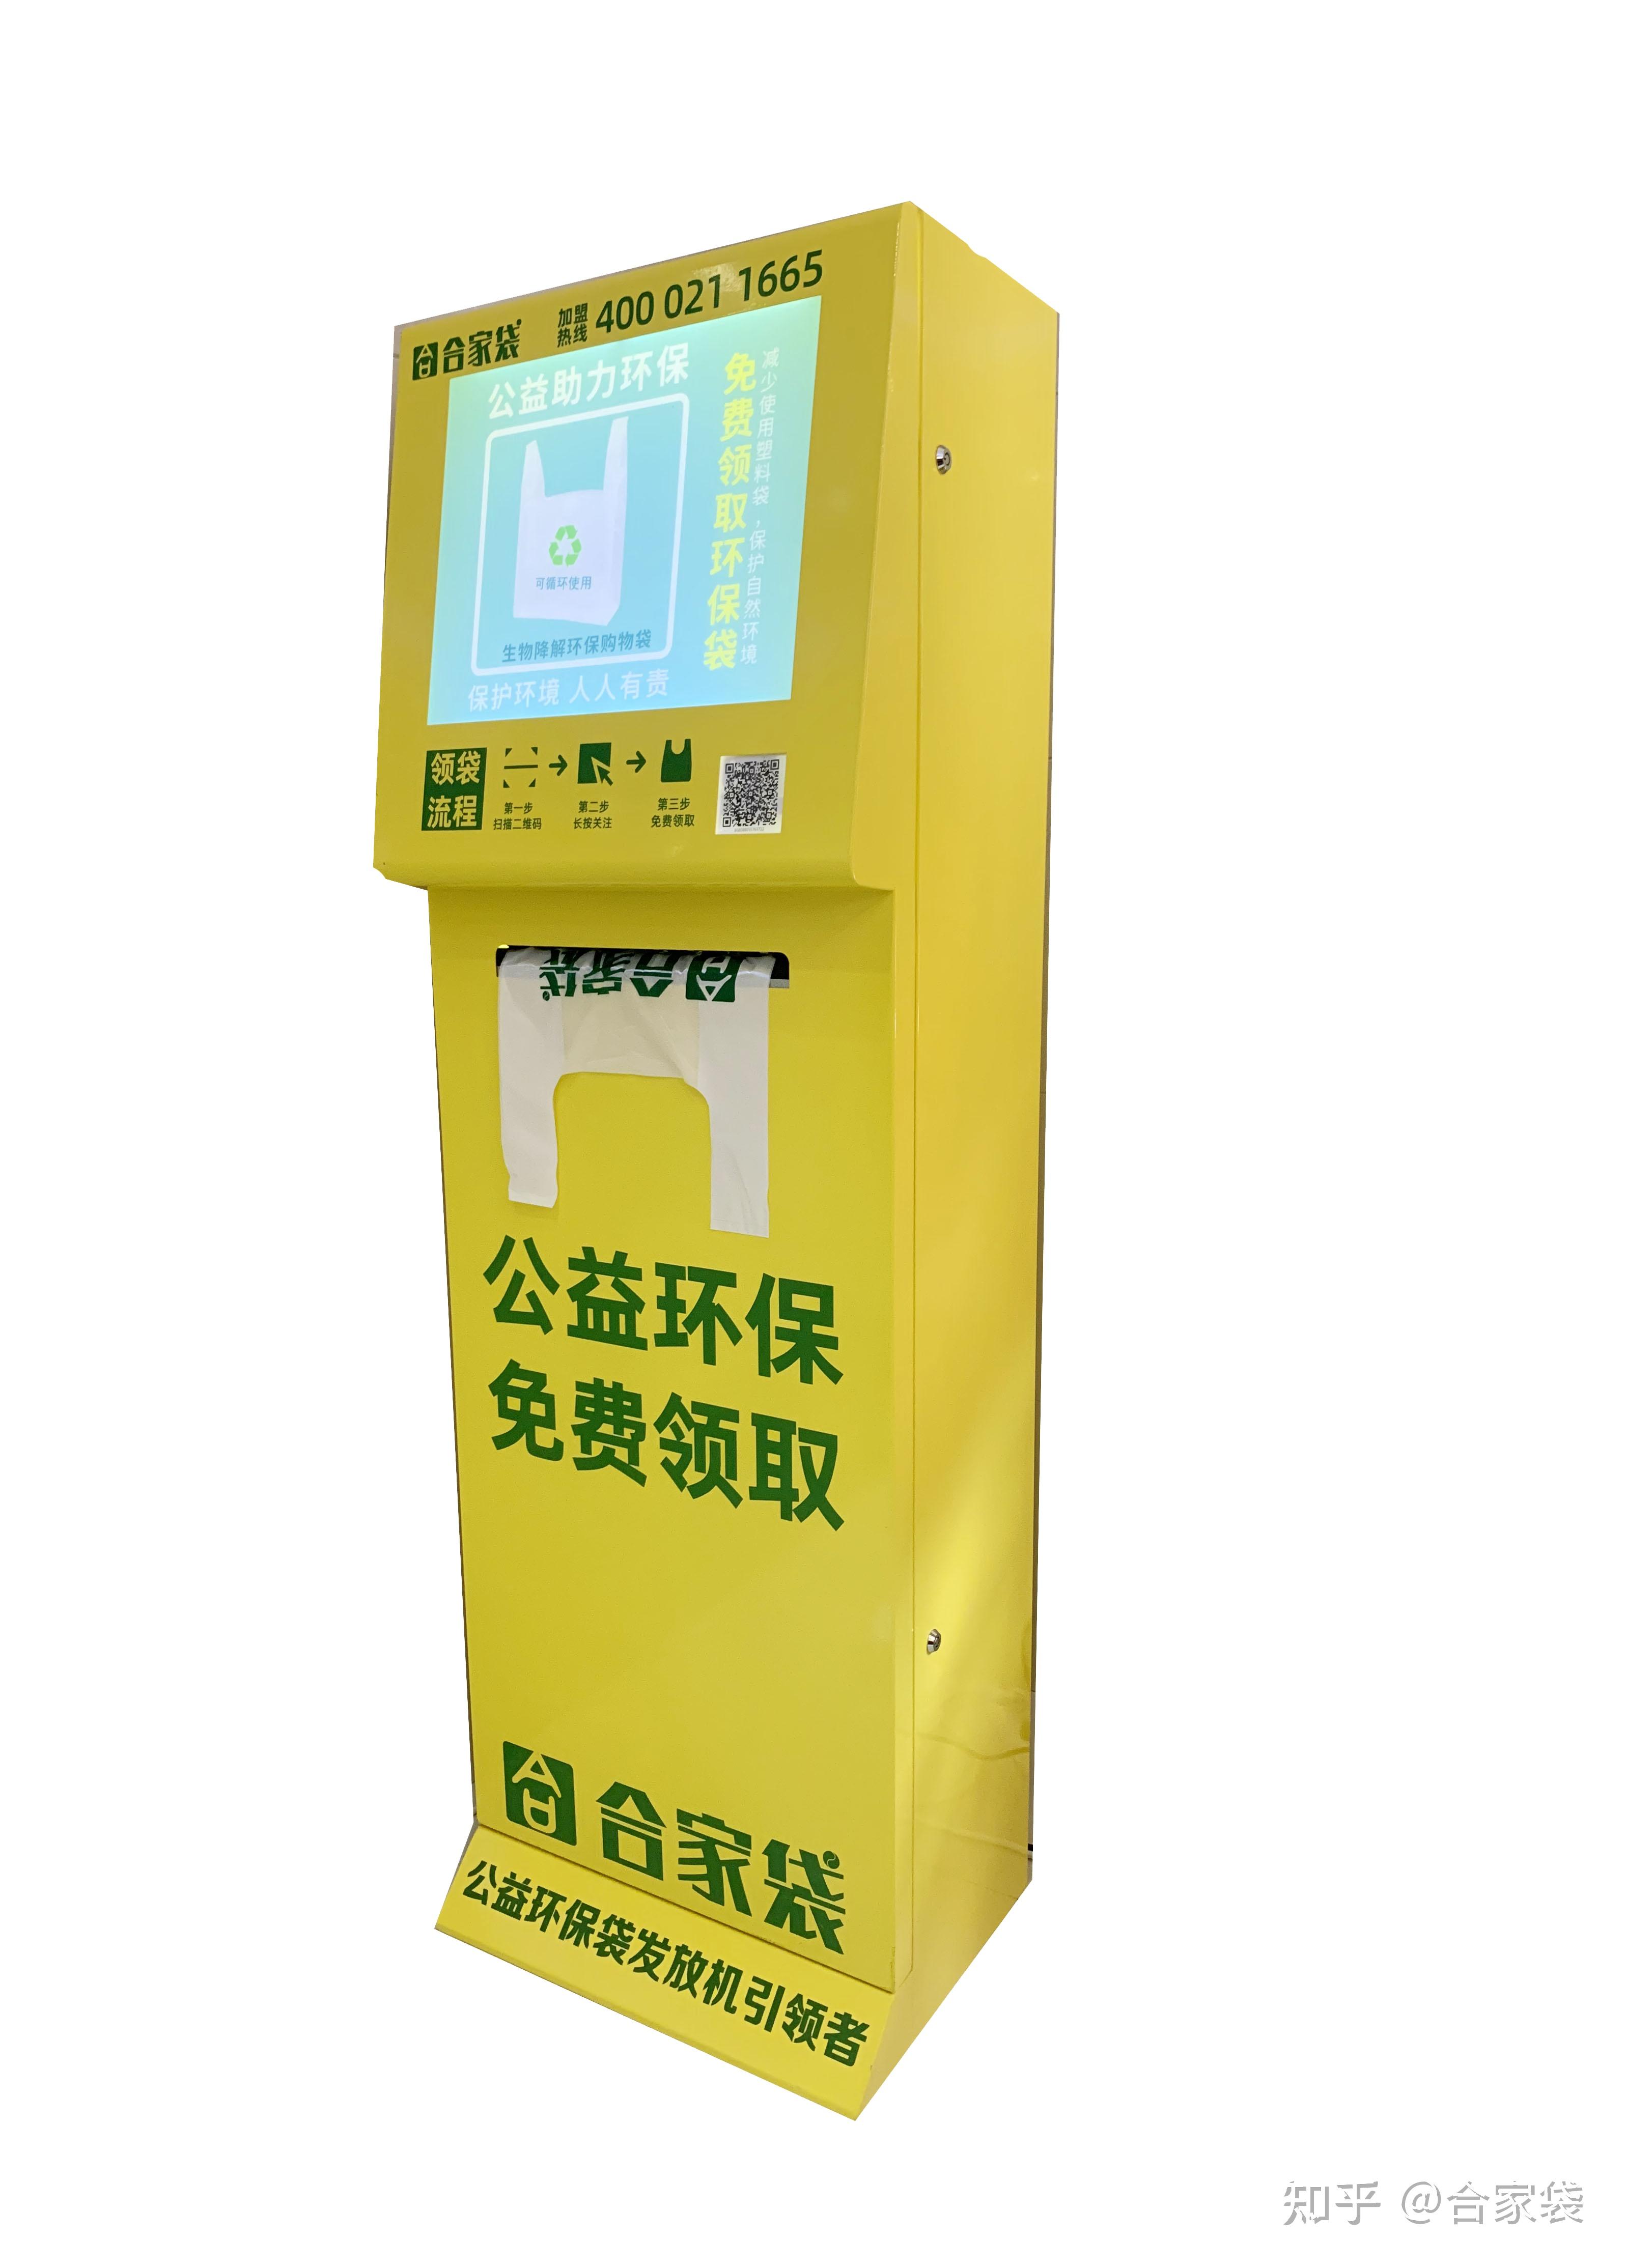 合家袋 公益环保袋倡导品牌 上海青上信息科技有限公司 shanghai